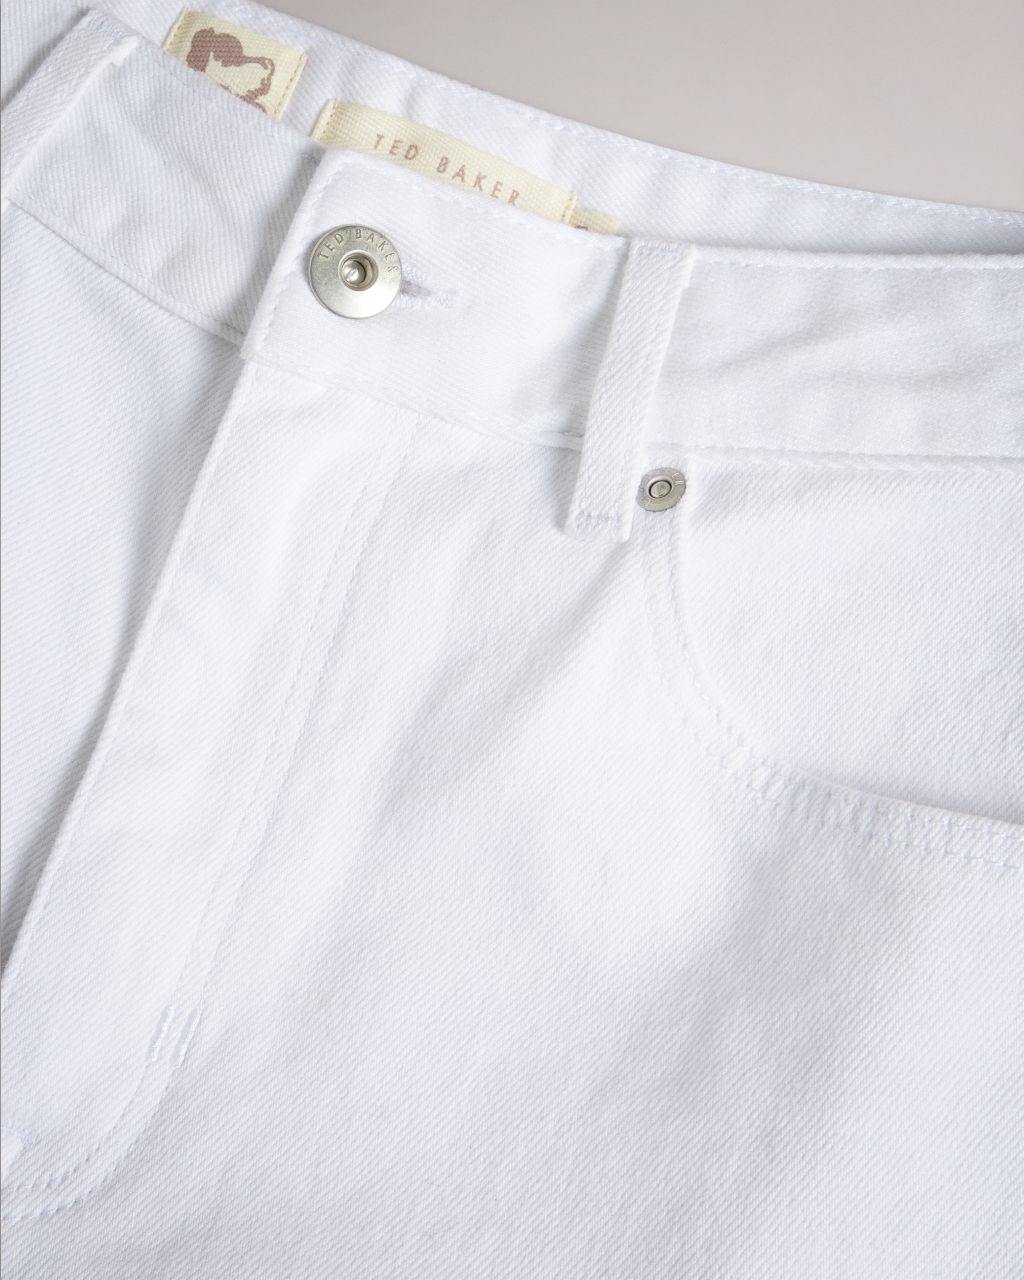 Artikel klicken und genauer betrachten! - - Ted Baker Damenkollektion - Denim Jeans - 90er Jahre weiter Schnitt - Reißverschluss und Knopfverschluss - Flood Länge - Ted Baker-Logo - Taschen - Wendy ist 1,77m und trägt Weiß in 25" | im Online Shop kaufen